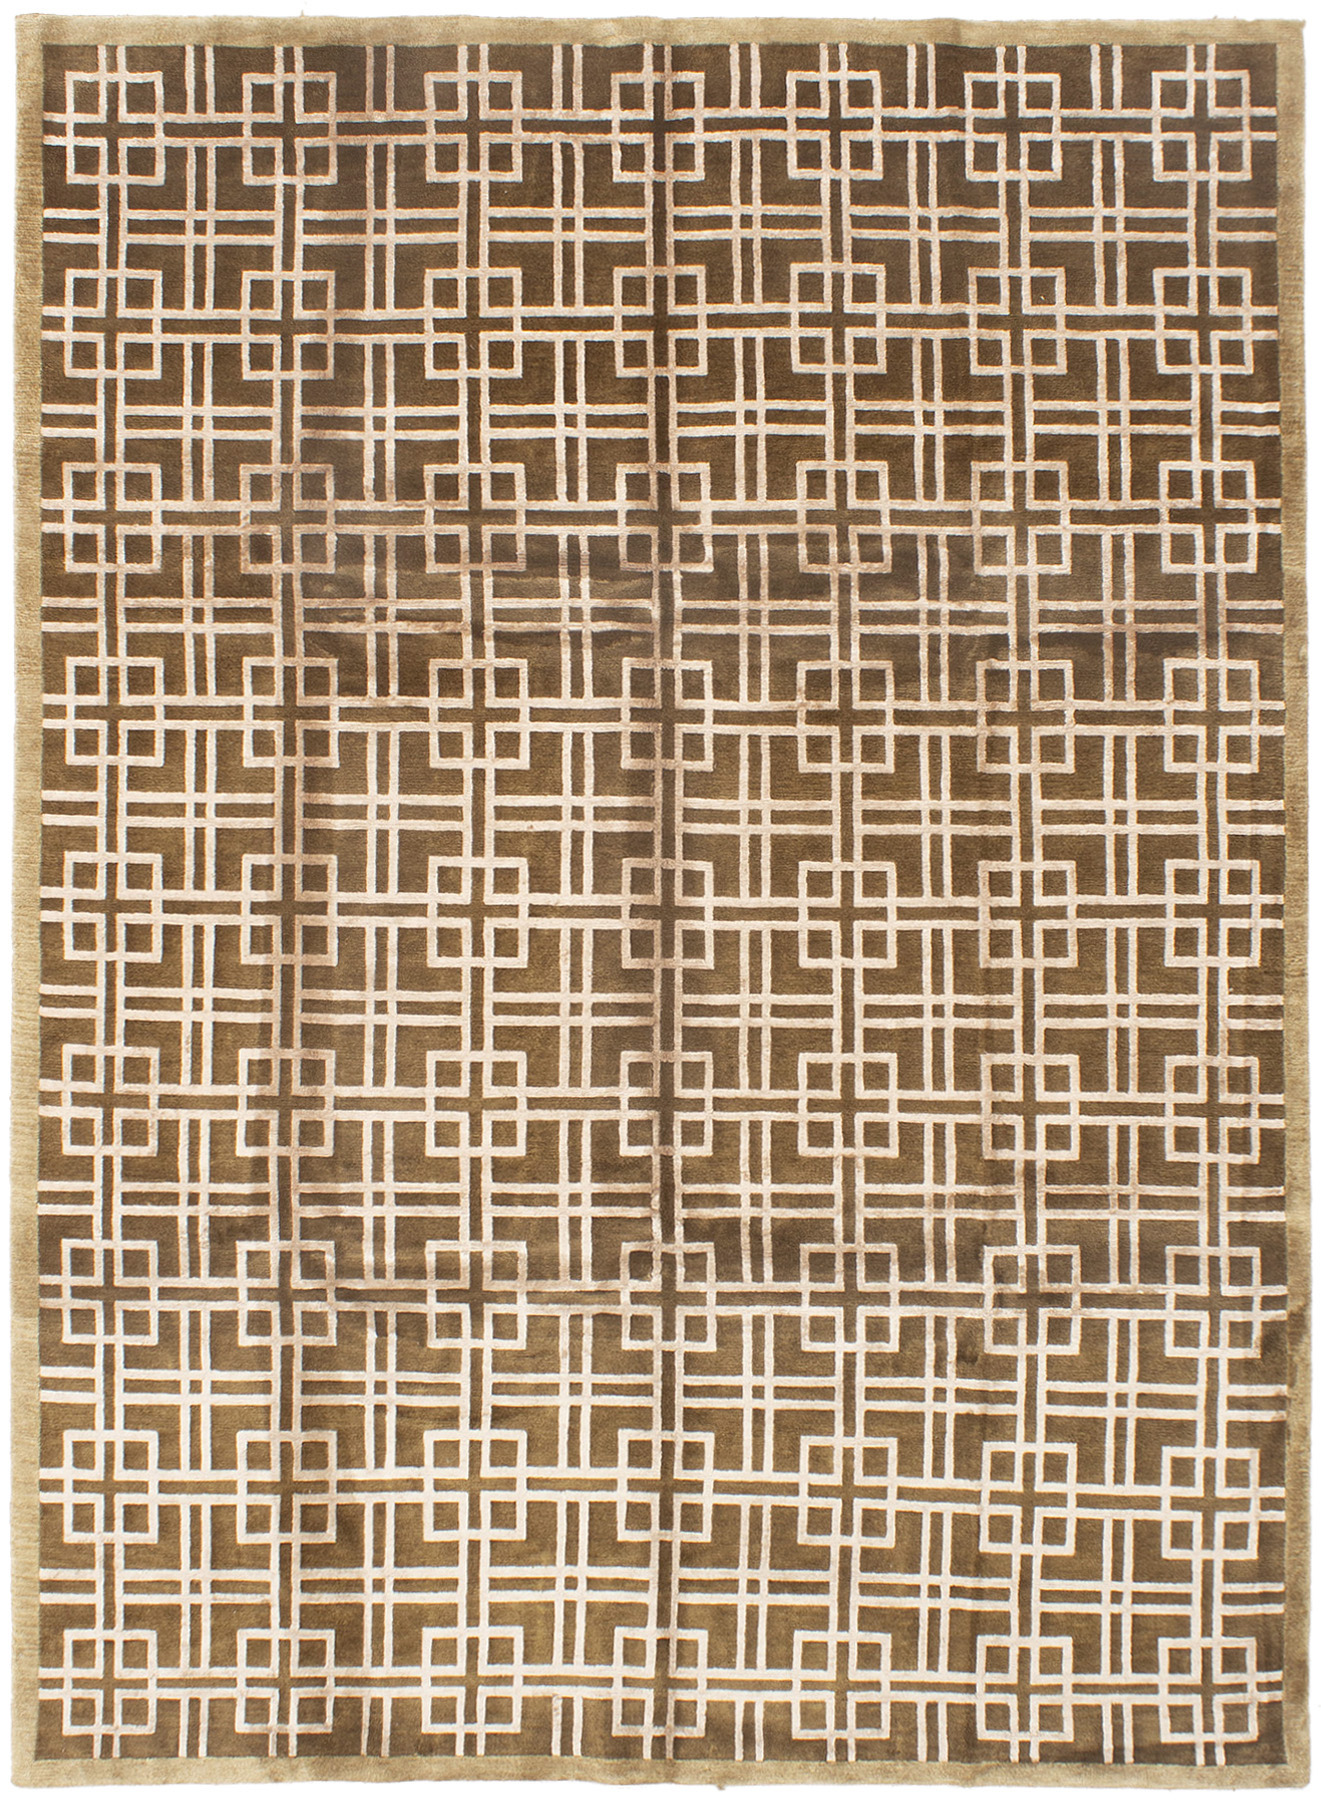 Hand-knotted Silk Touch Dark Brown Wool/Silk Rug 7'9" x 9'9"  Size: 7'9" x 9'9"  